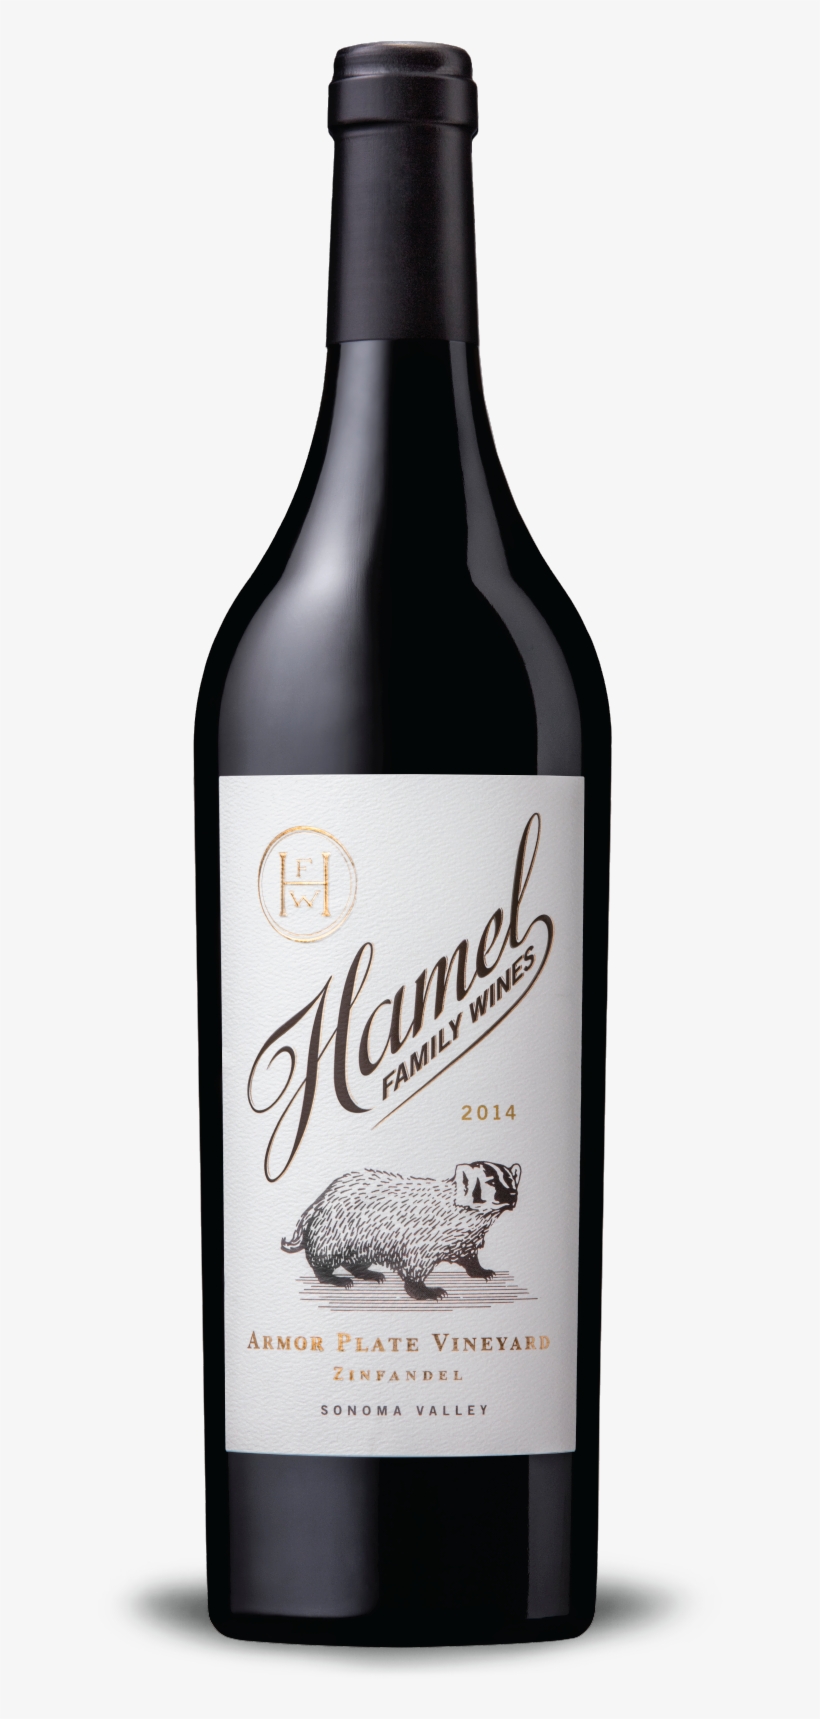 2014 Armor Plate Vineyard Zinfandel - Hamel Family Wines, transparent png #146888